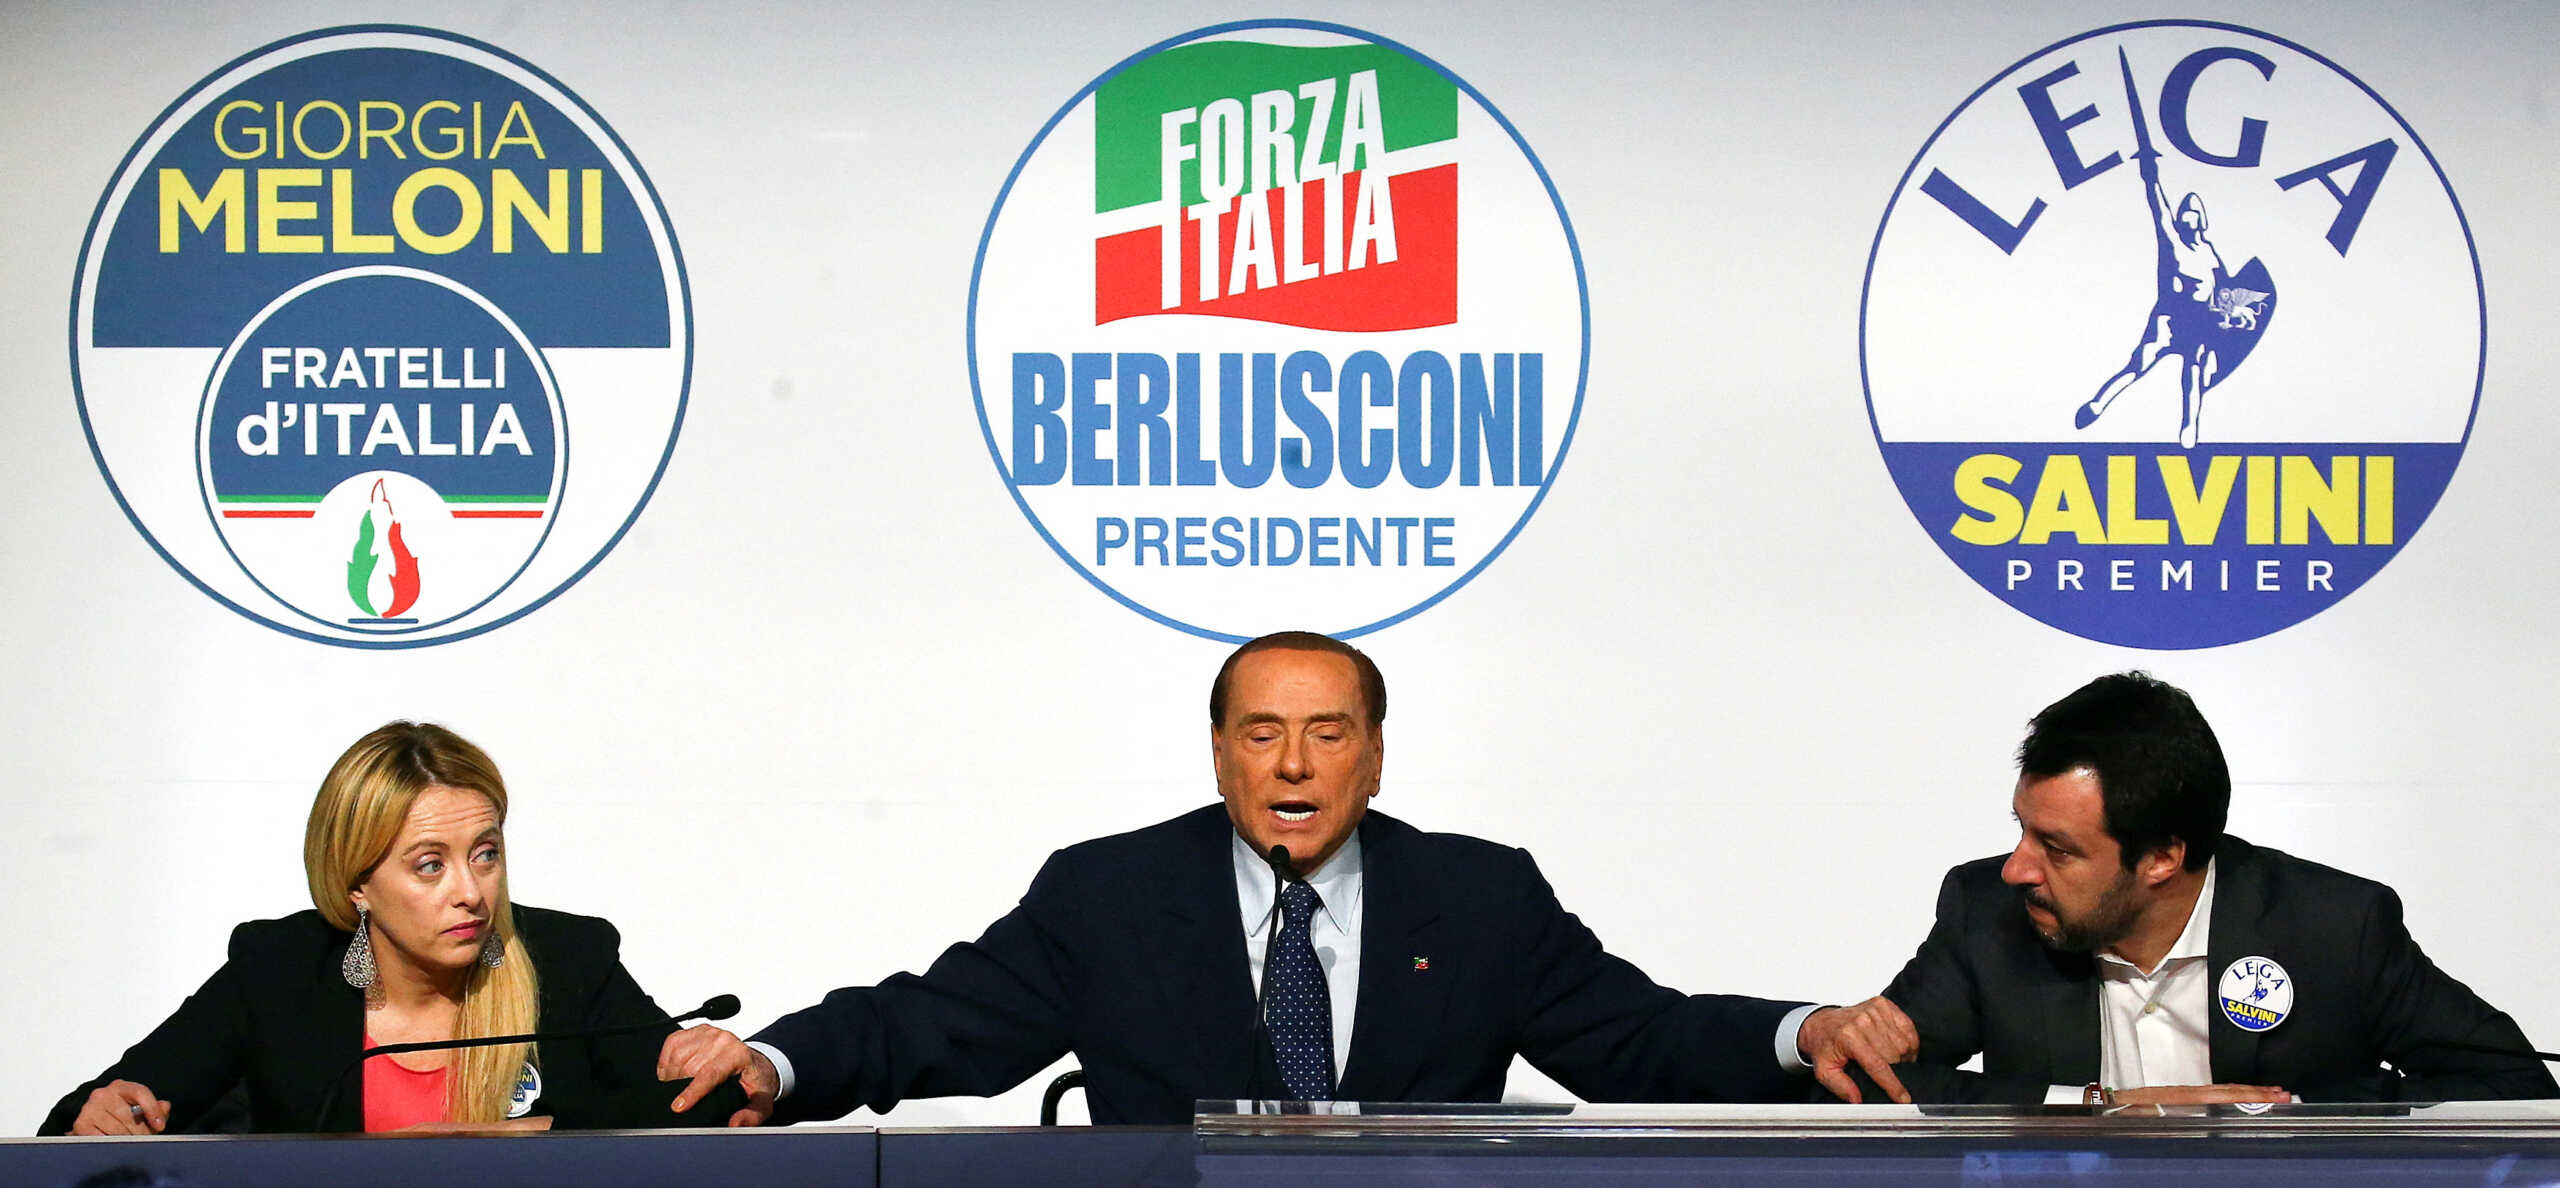 Εκλογές στην Ιταλία: Άνοιξαν οι κάλπες – Ανησυχία στην ΕΕ για το ενδεχόμενο ακροδεξιάς κυβέρνησης